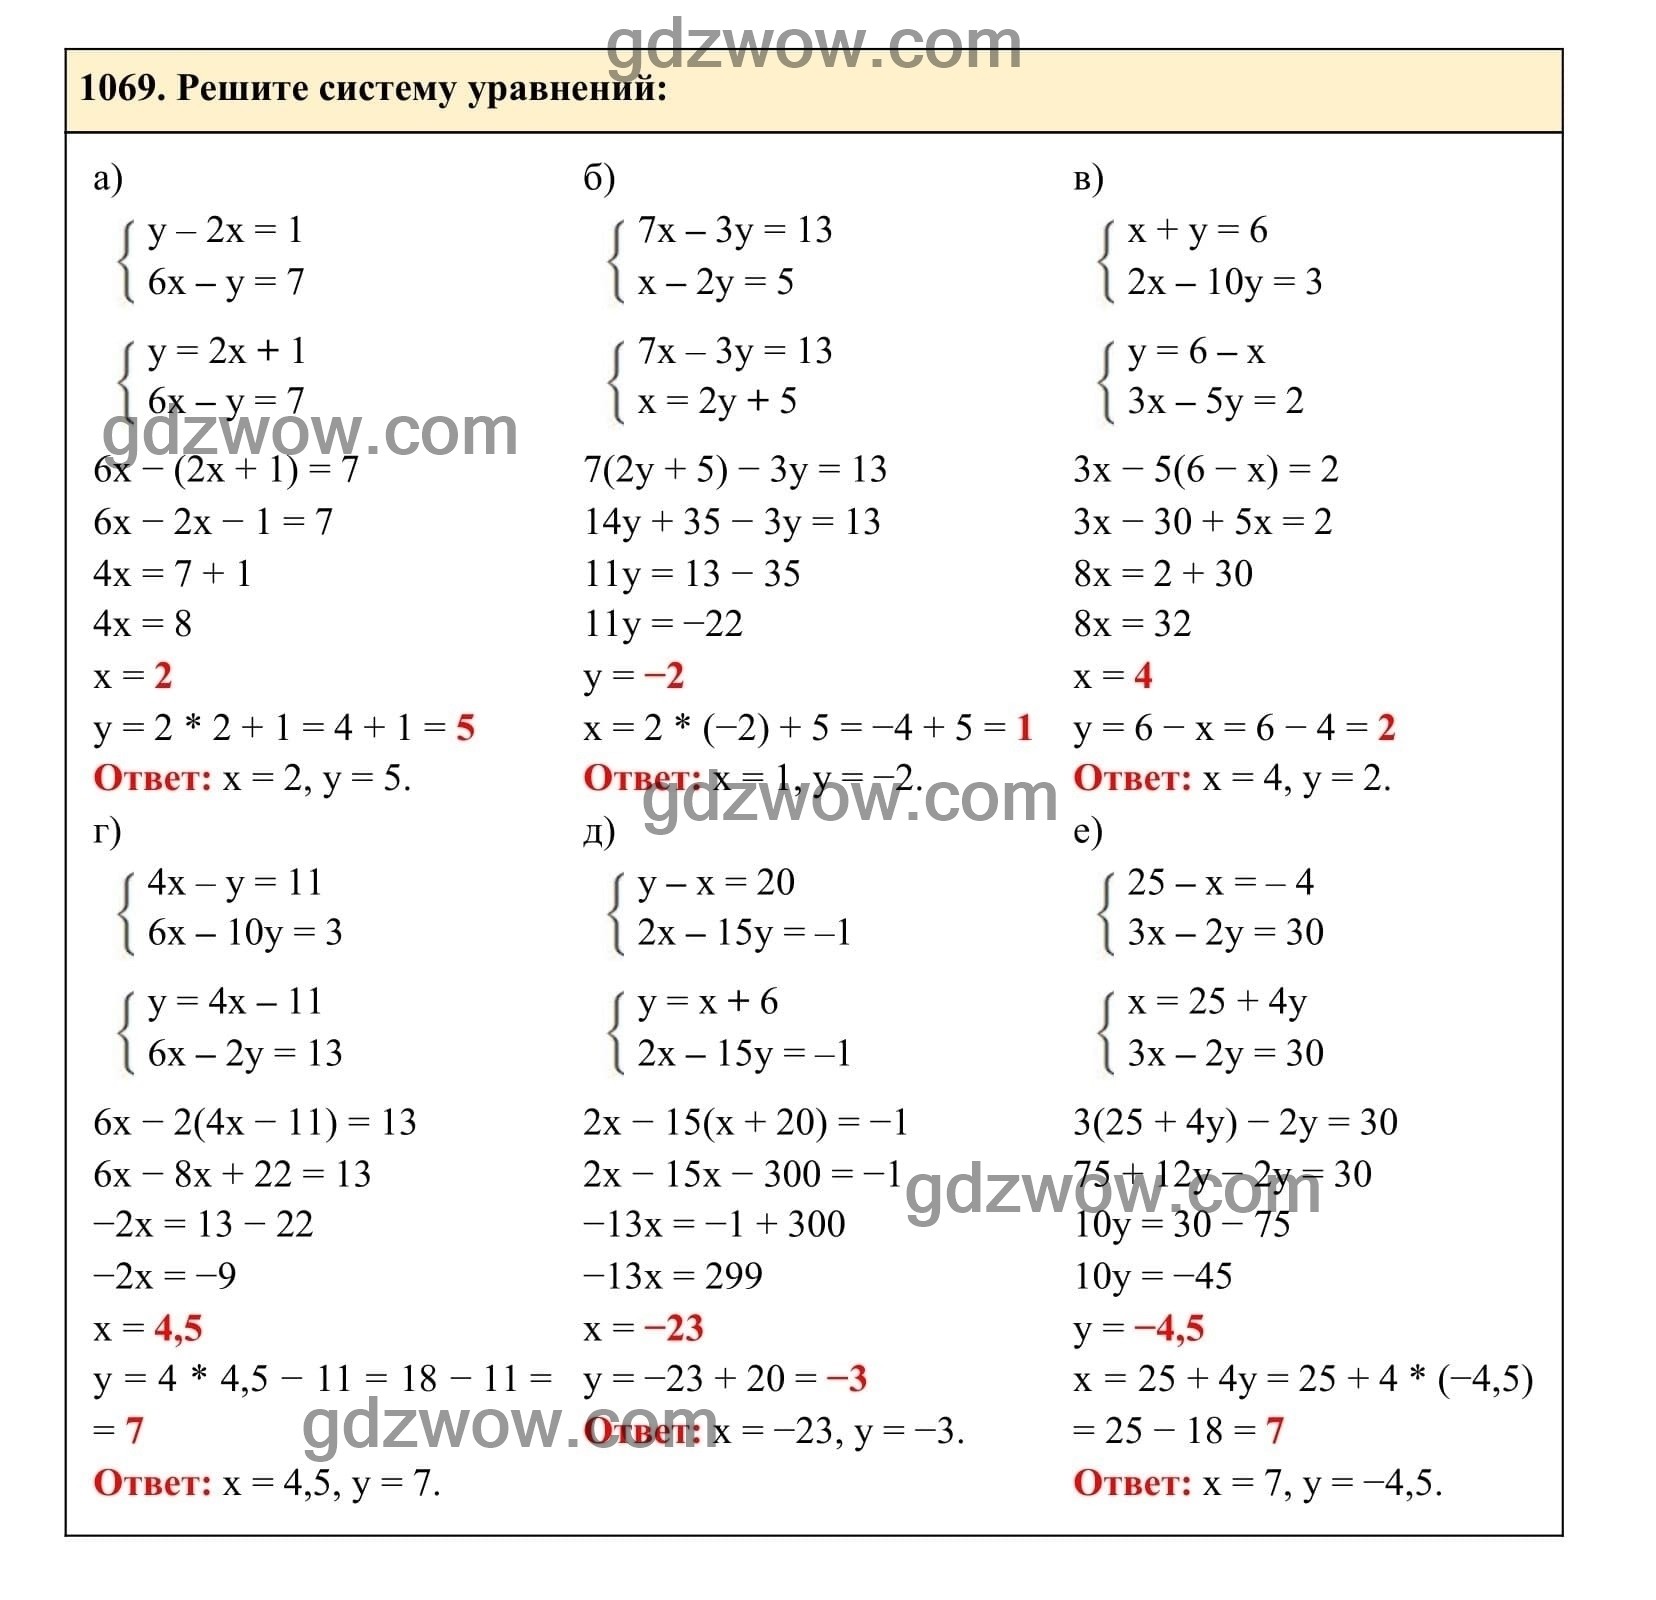 Упражнение 1069 - ГДЗ по Алгебре 7 класс Учебник Макарычев (решебник) - GDZwow